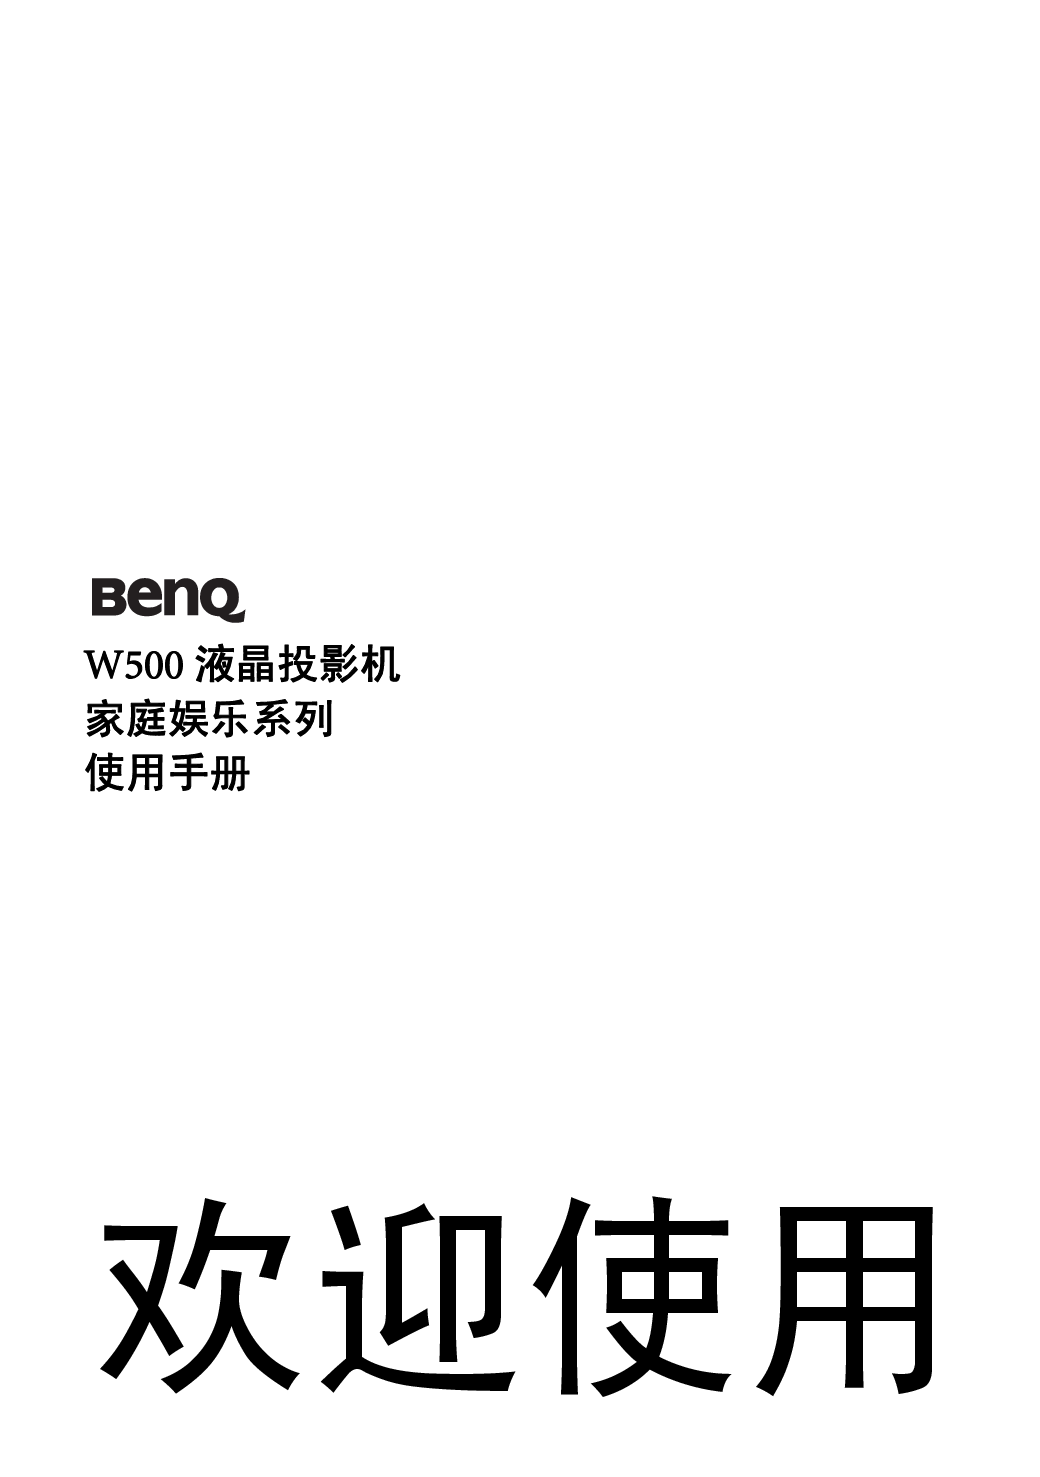 明基 Benq W500 用户手册 封面